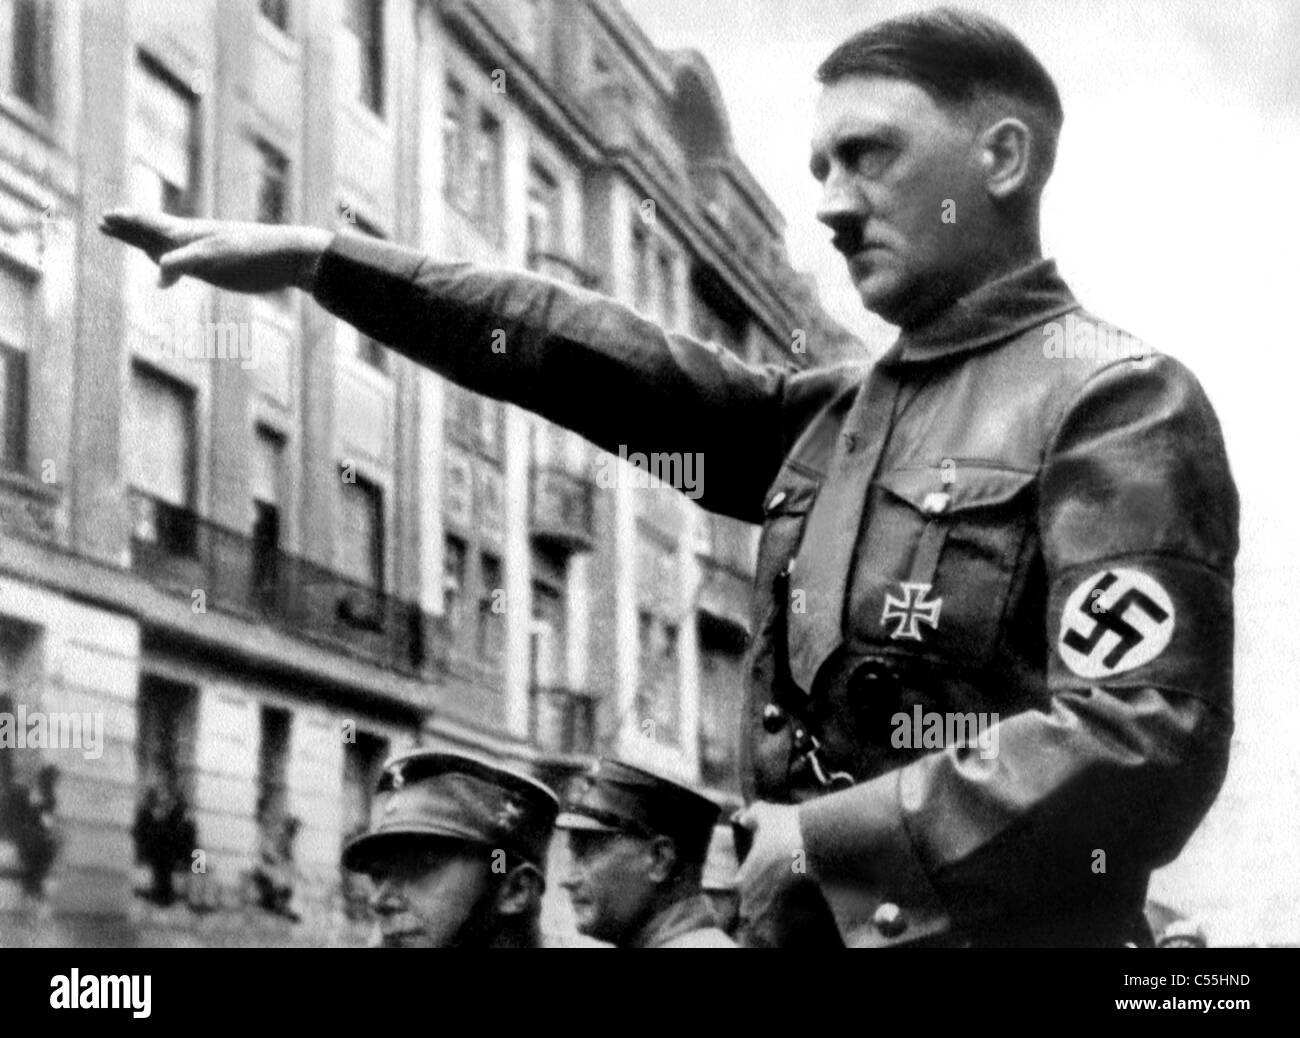 ADOLF HITLER FUHRER OF GERMANY NAZI LEADER 01 September 1938 Stock Photo